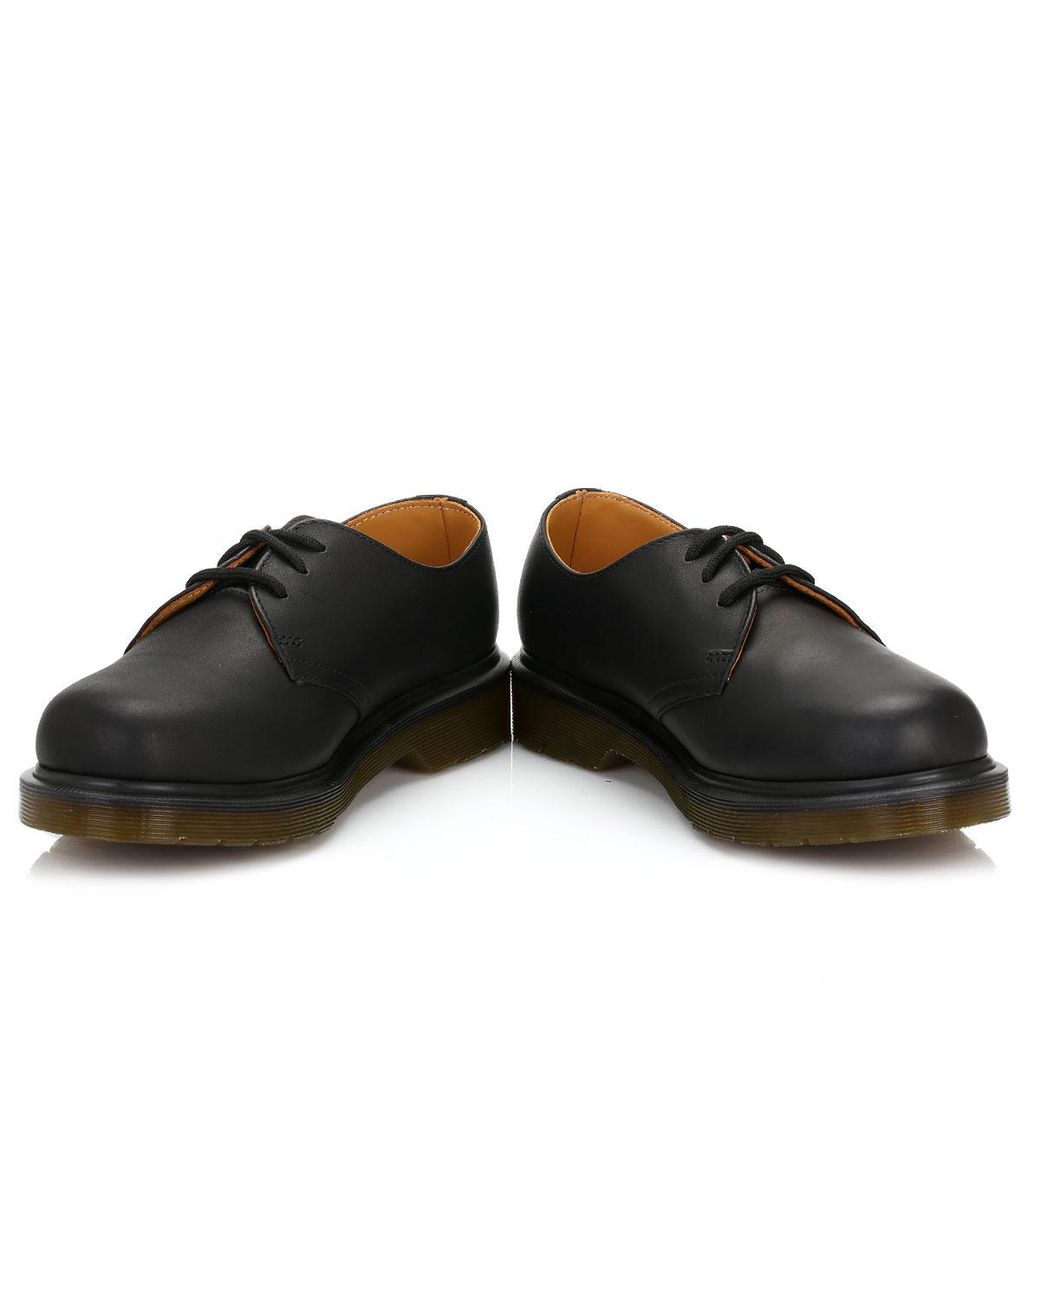 Dr. Martens Dr. Martens 1461 Greasy Black Shoes for Men | Lyst UK